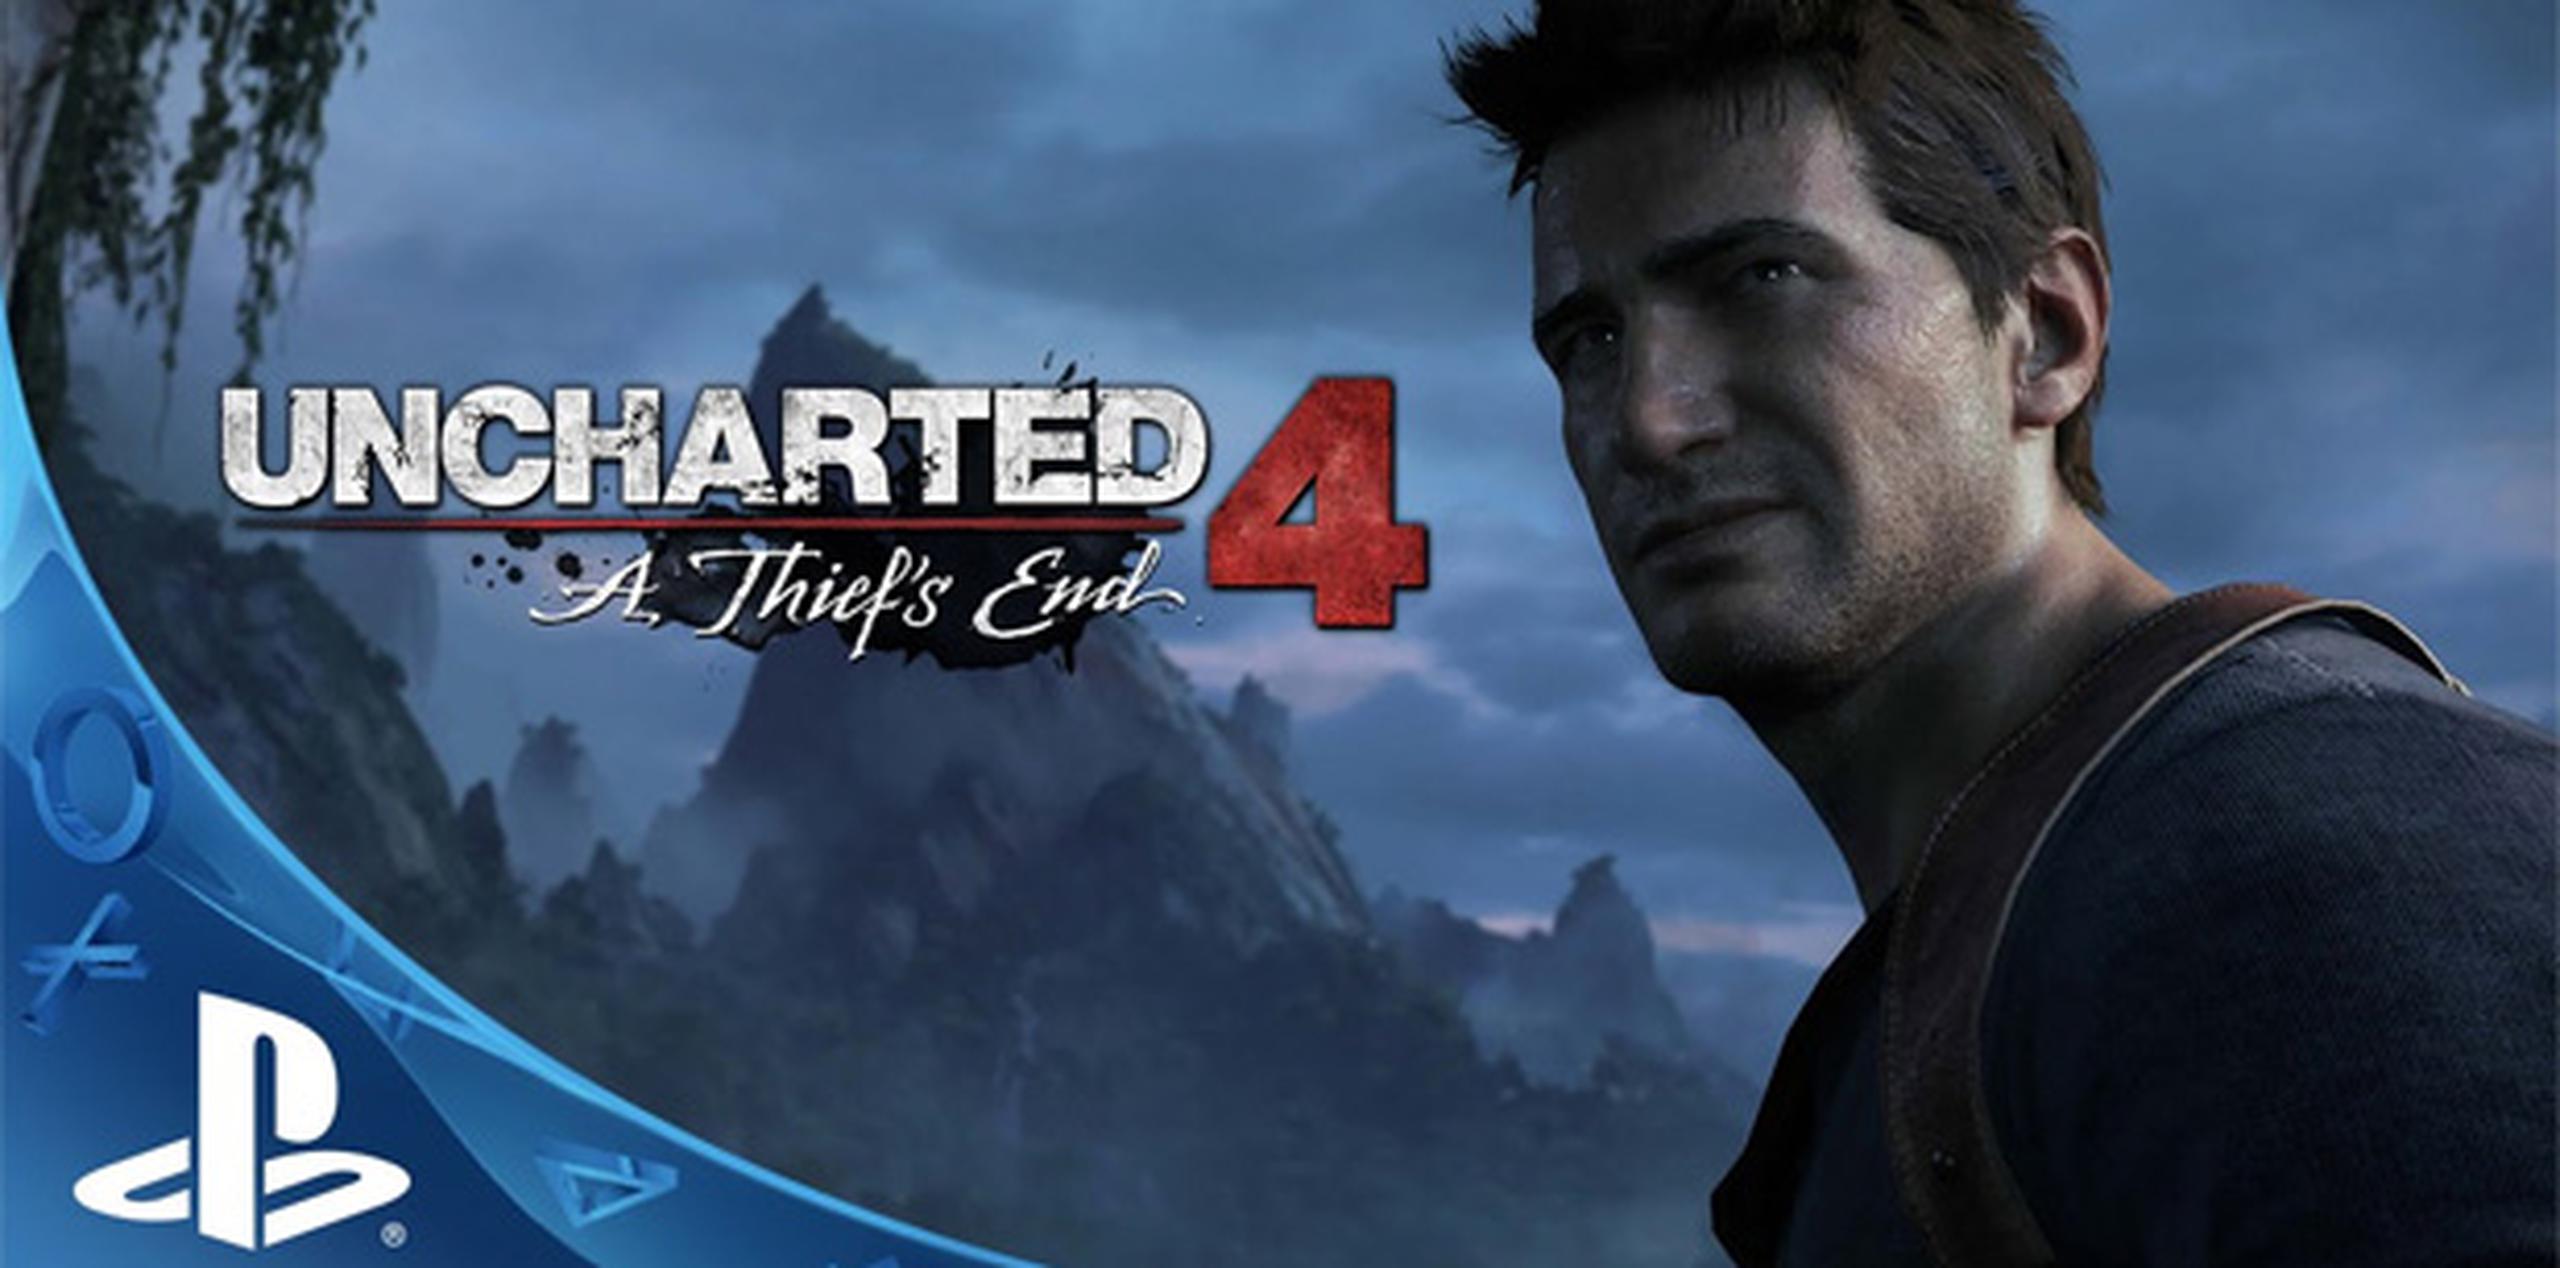 Sony cerró su presentación del lunes para la feria E3 de videojuegos con una demostración llena de disparos de "Uncharted 4: A Thief's End", la próxima entrega de la saga de aventuras protagonizada por el carismático cazatesoros.